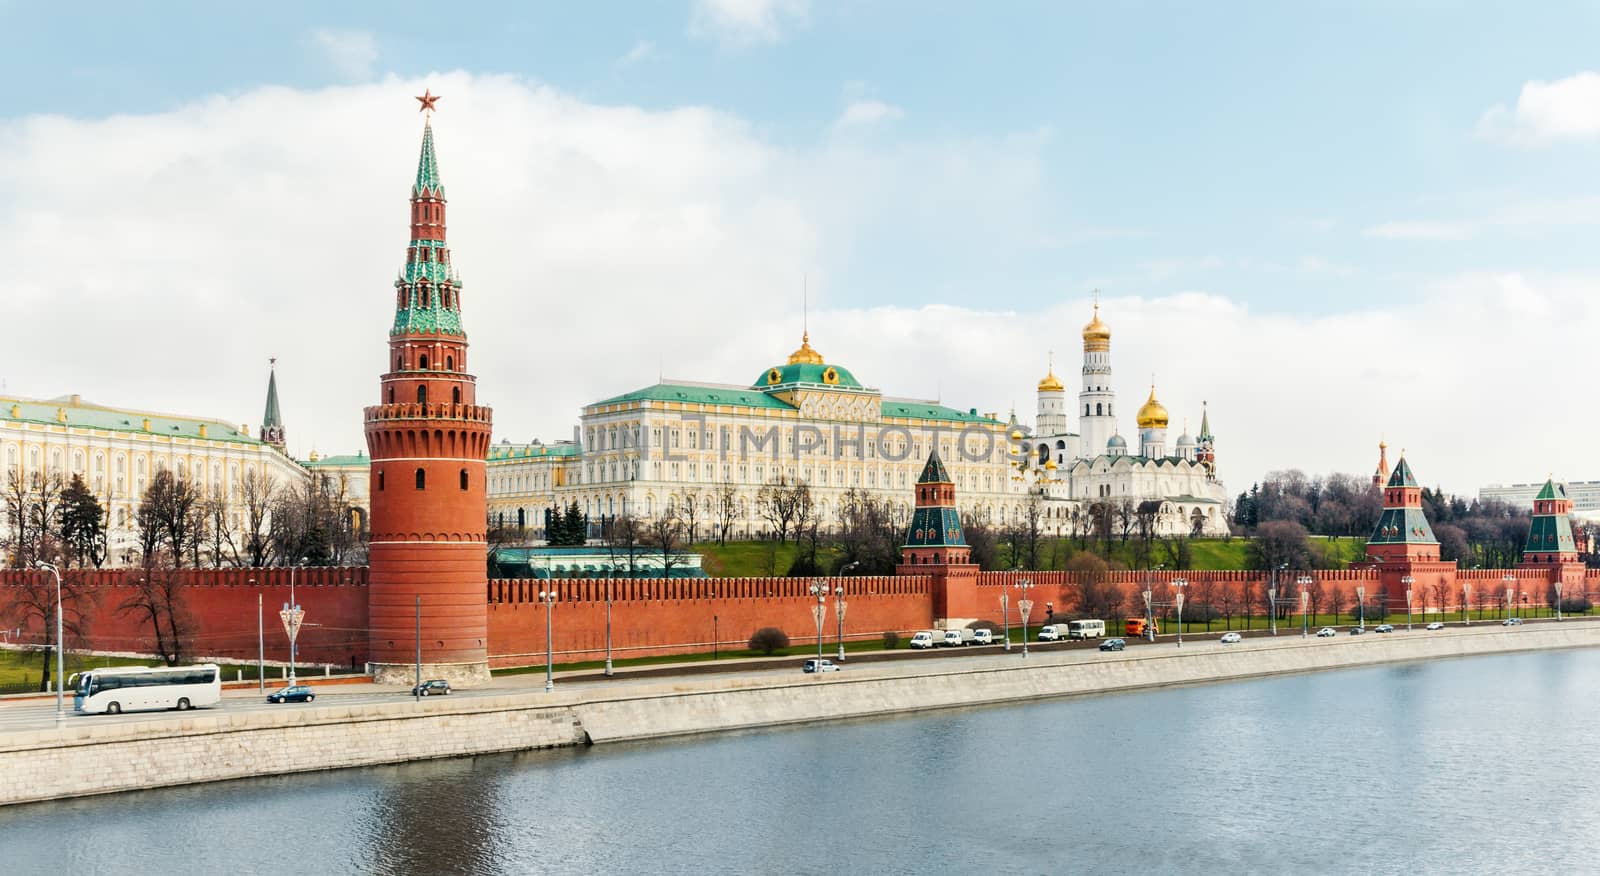 Moscow Kremlin by zeffss